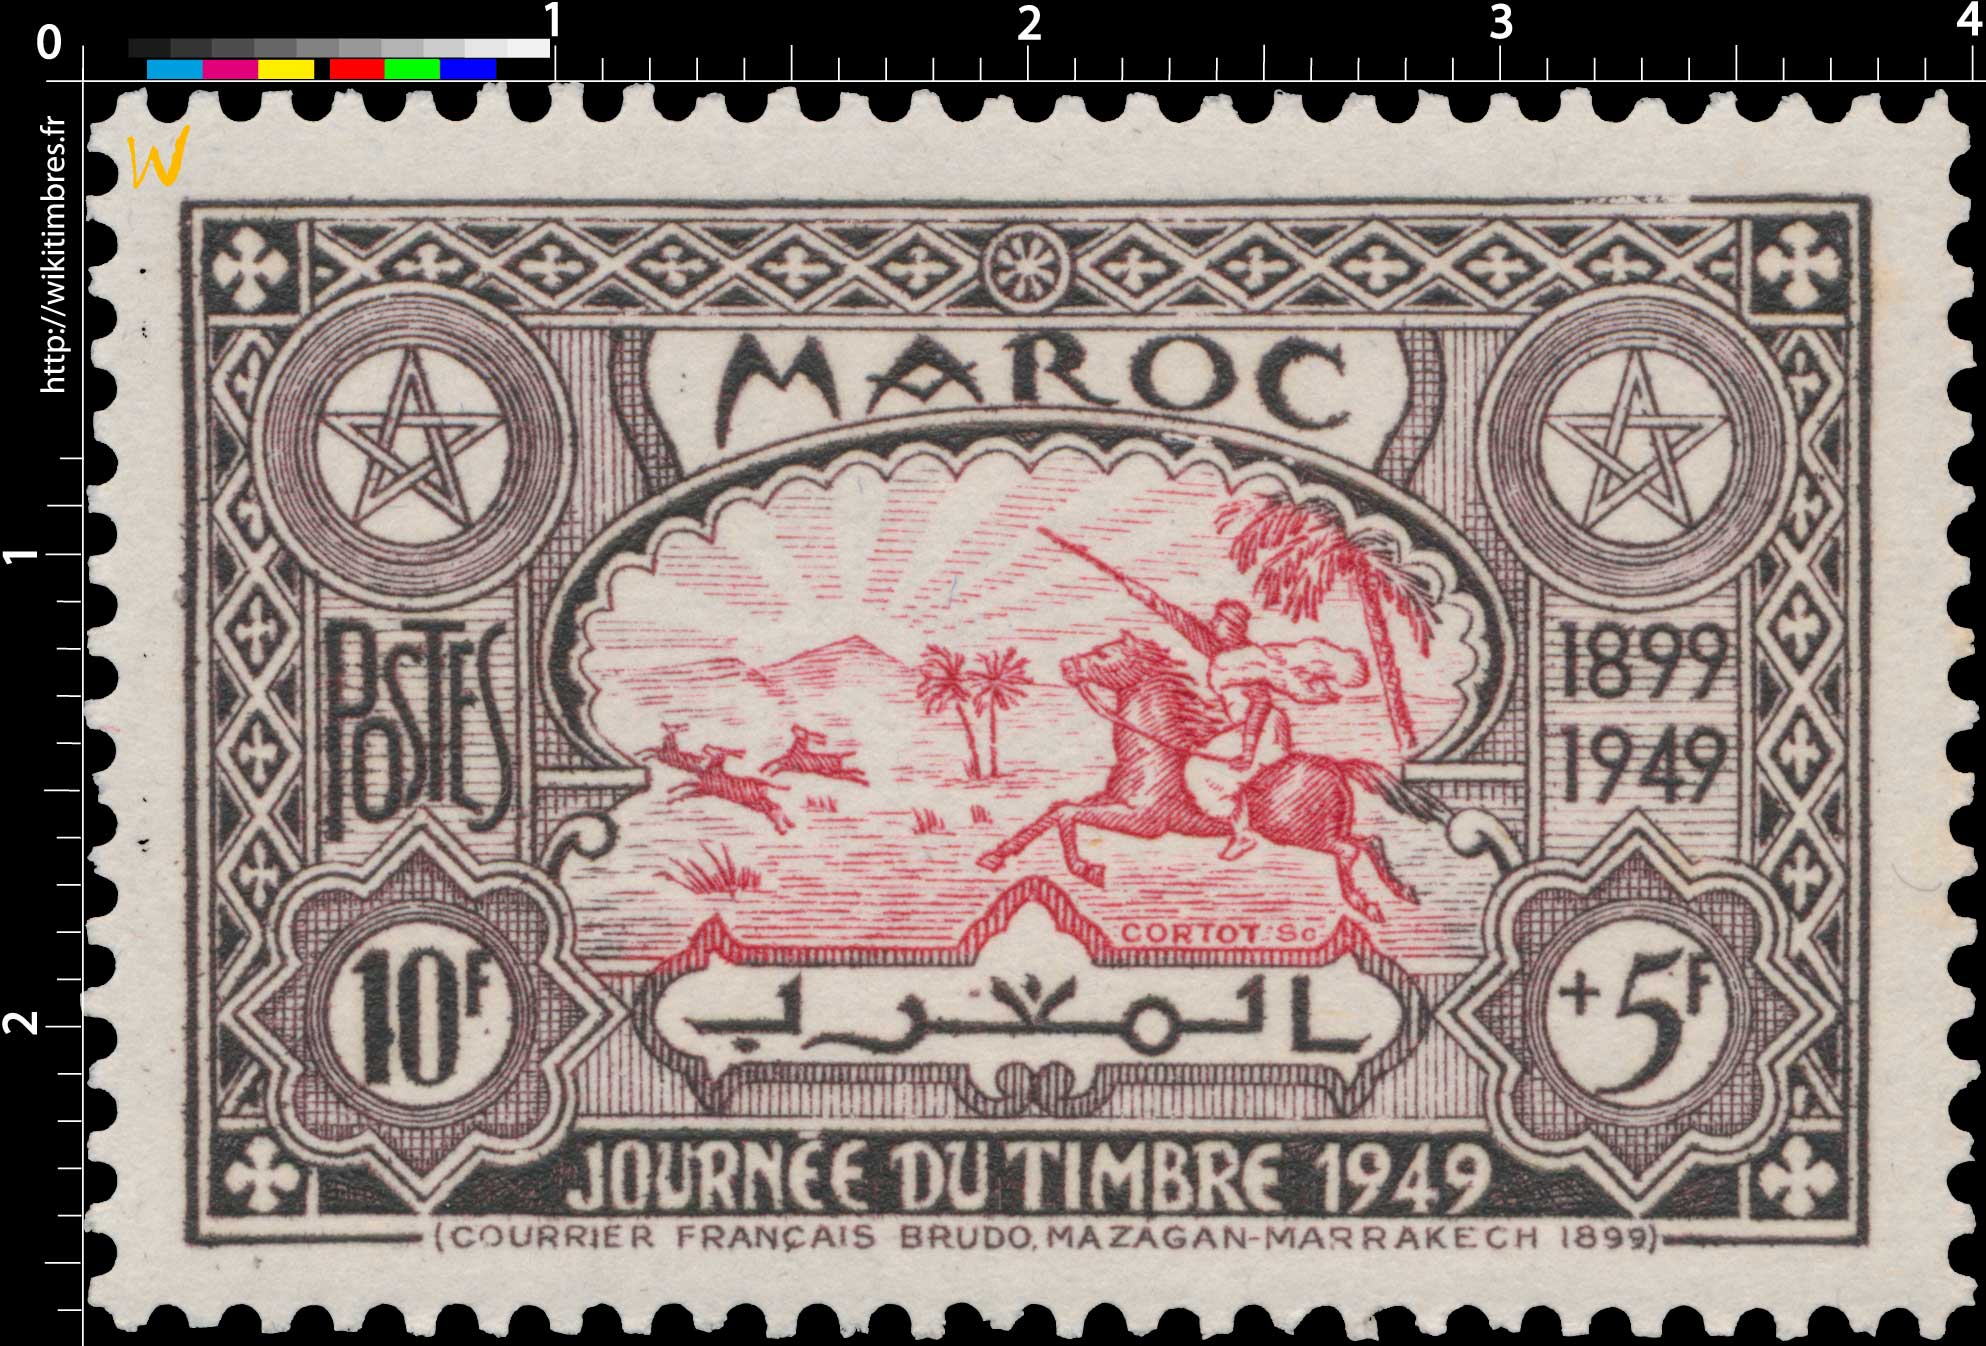 1949 Maroc - Chasse à la gazelle